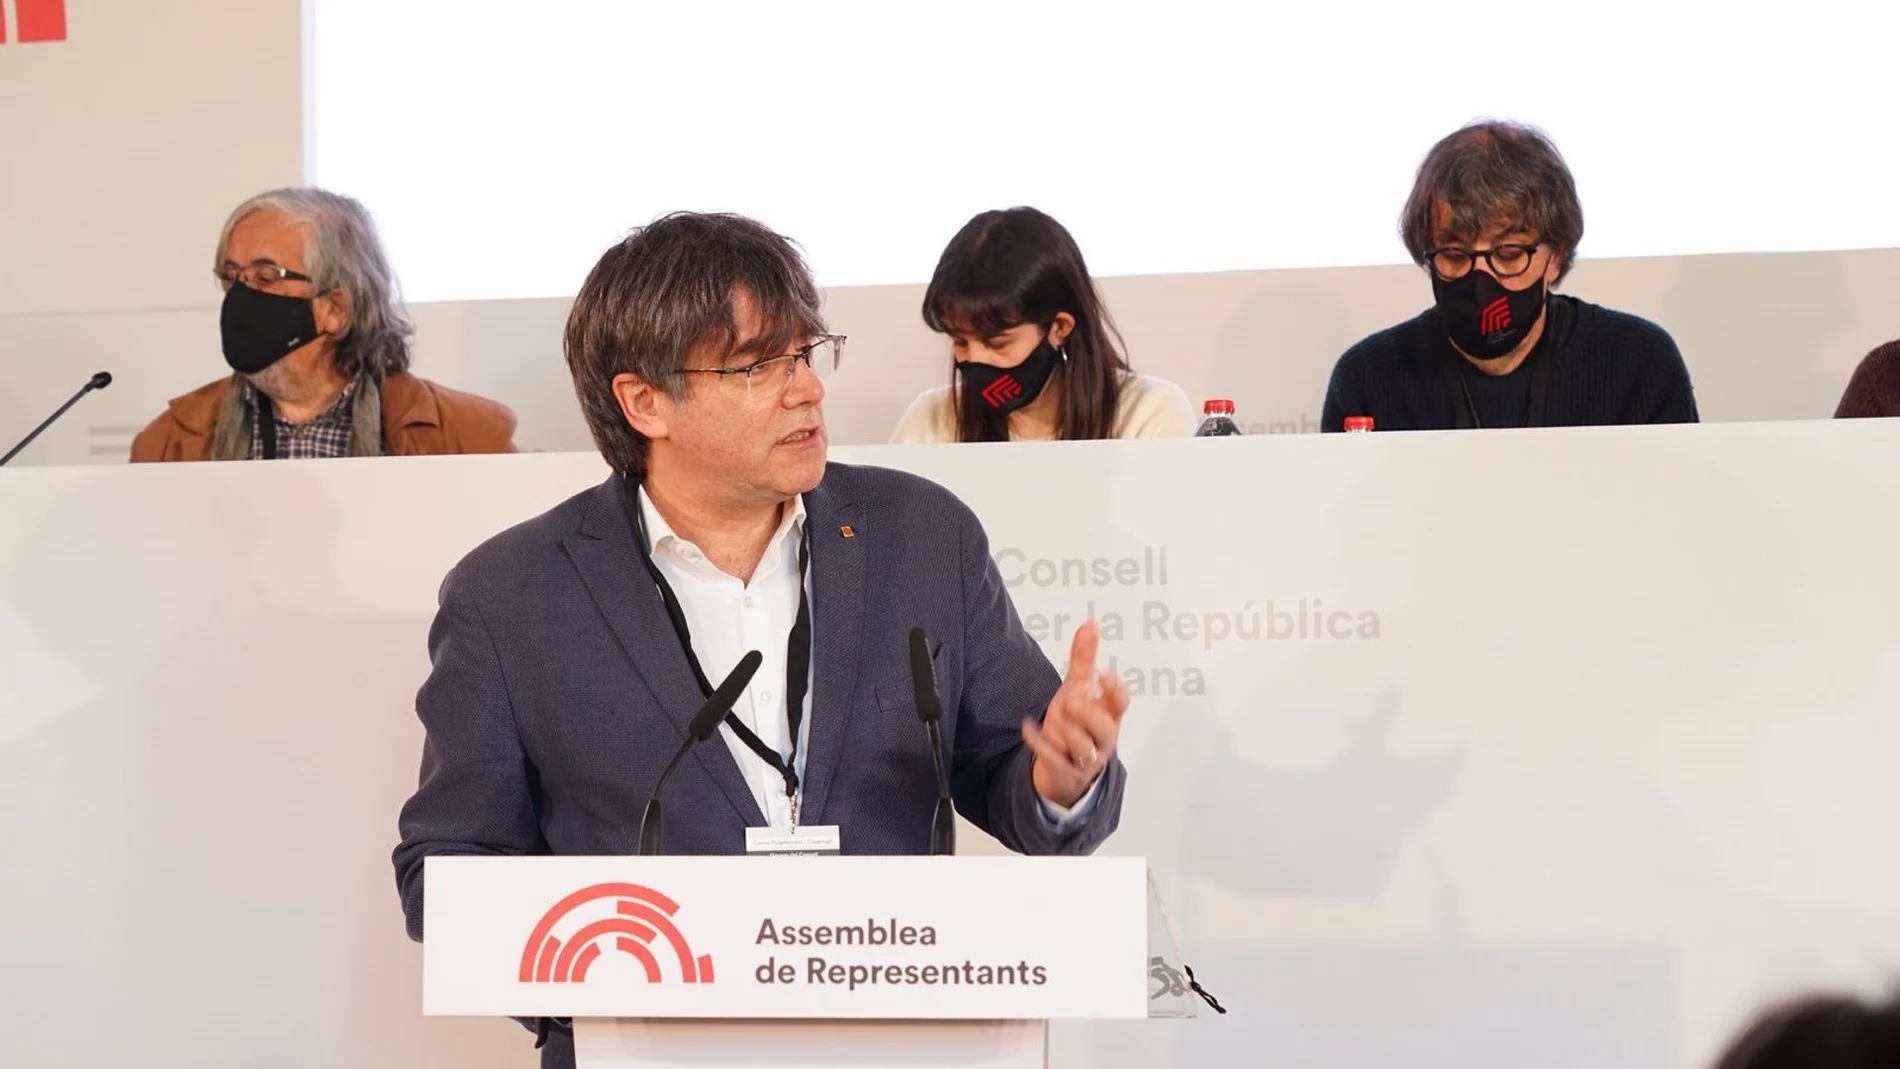 Carles Puigdemont y su Consell per la República